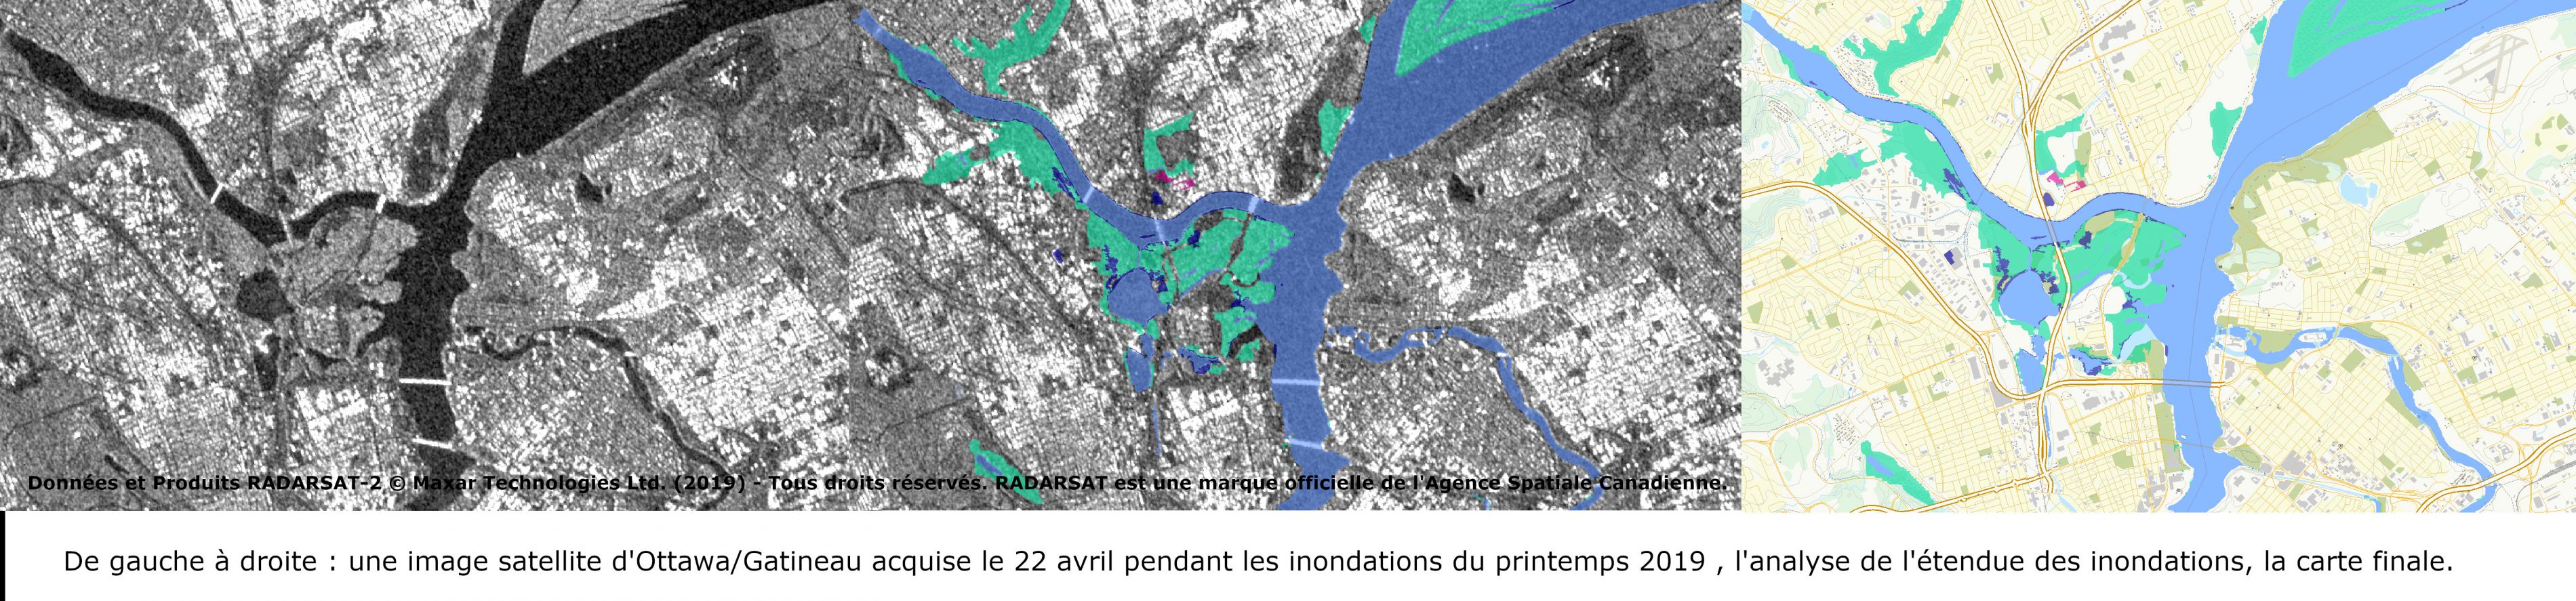 De gauche à droite : une image satellite brute de l’inondation survenue à Gatineau/ Ottawa le 22 avril, suivie de l’image comprenant les premières données d’analyse, puis la carte définitive.